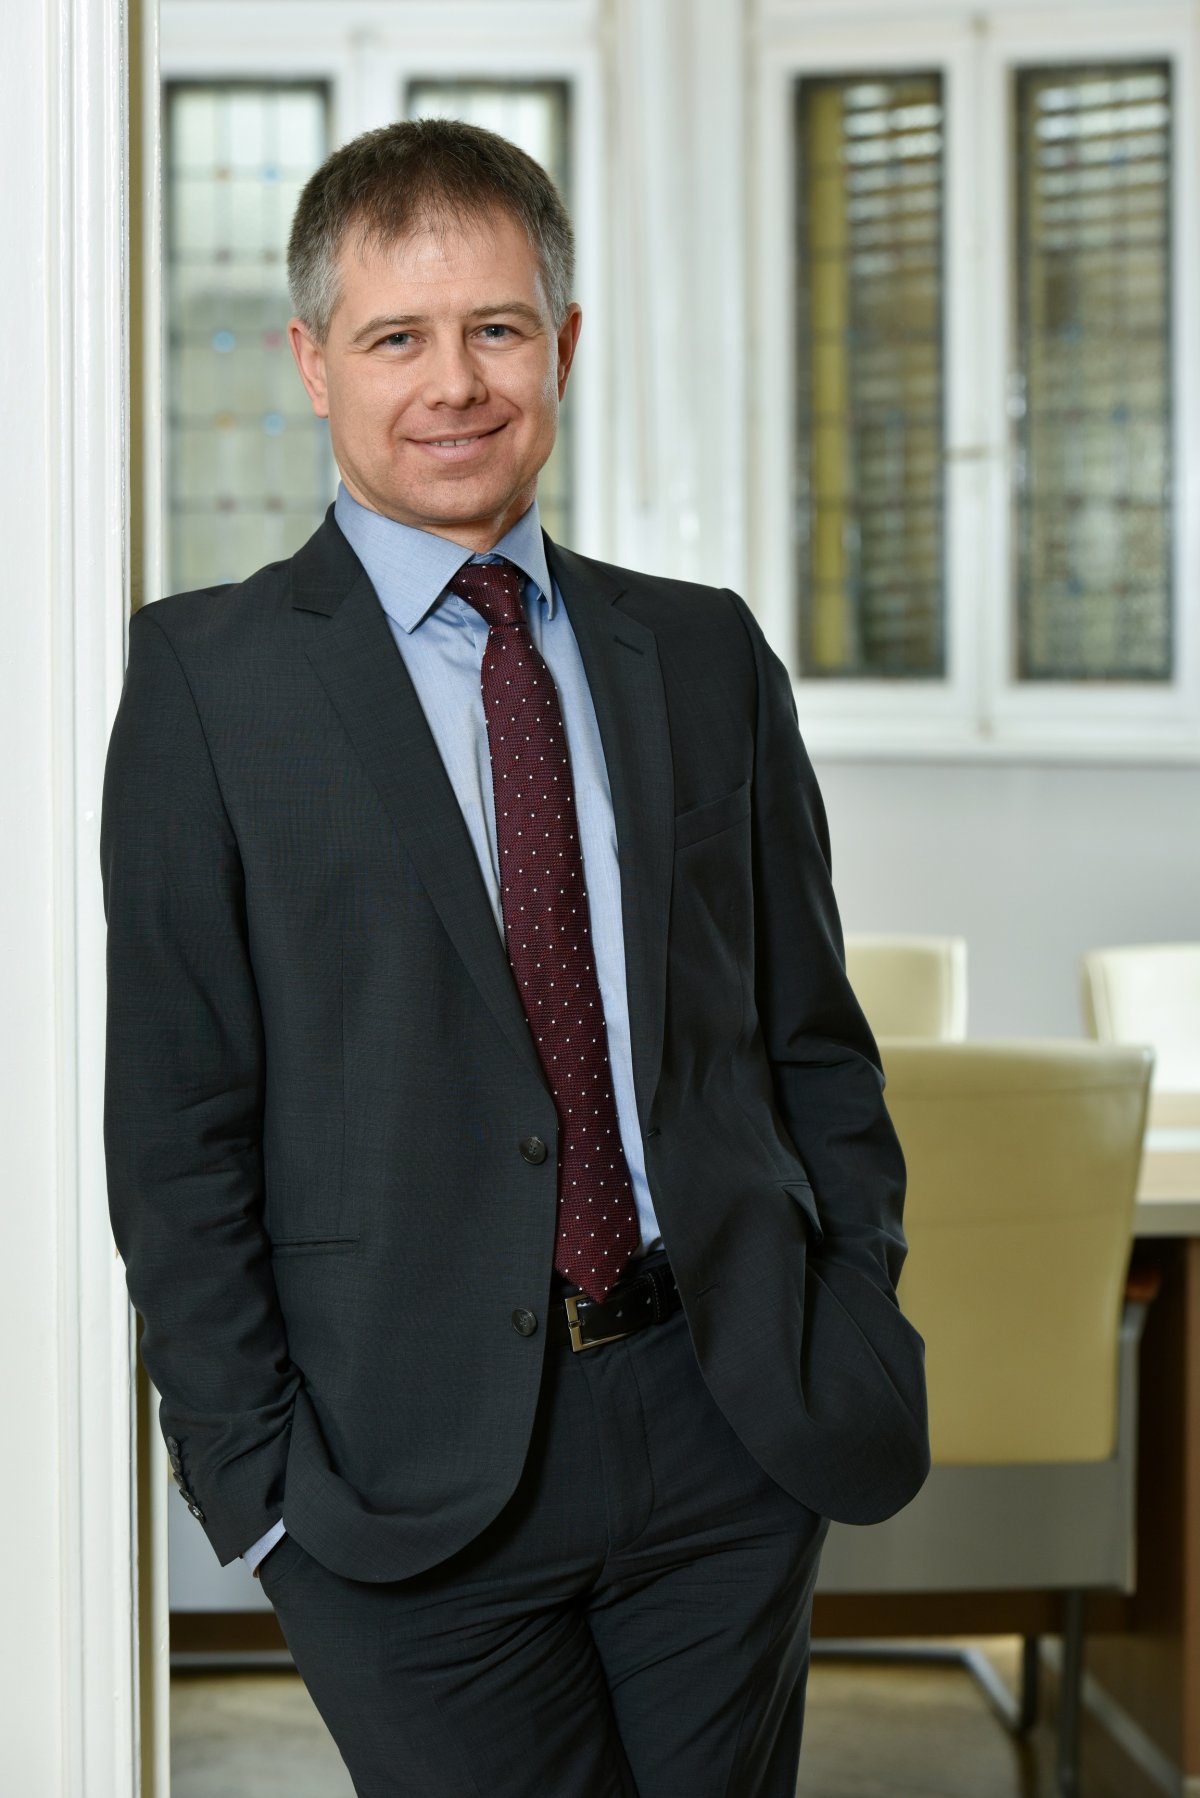 Jelentős a válság, de gyorsabb lehet a helyreállás – Fatér Gyula, az OTP Bank Románia vezérigazgatója a gazdaság kihívásairól